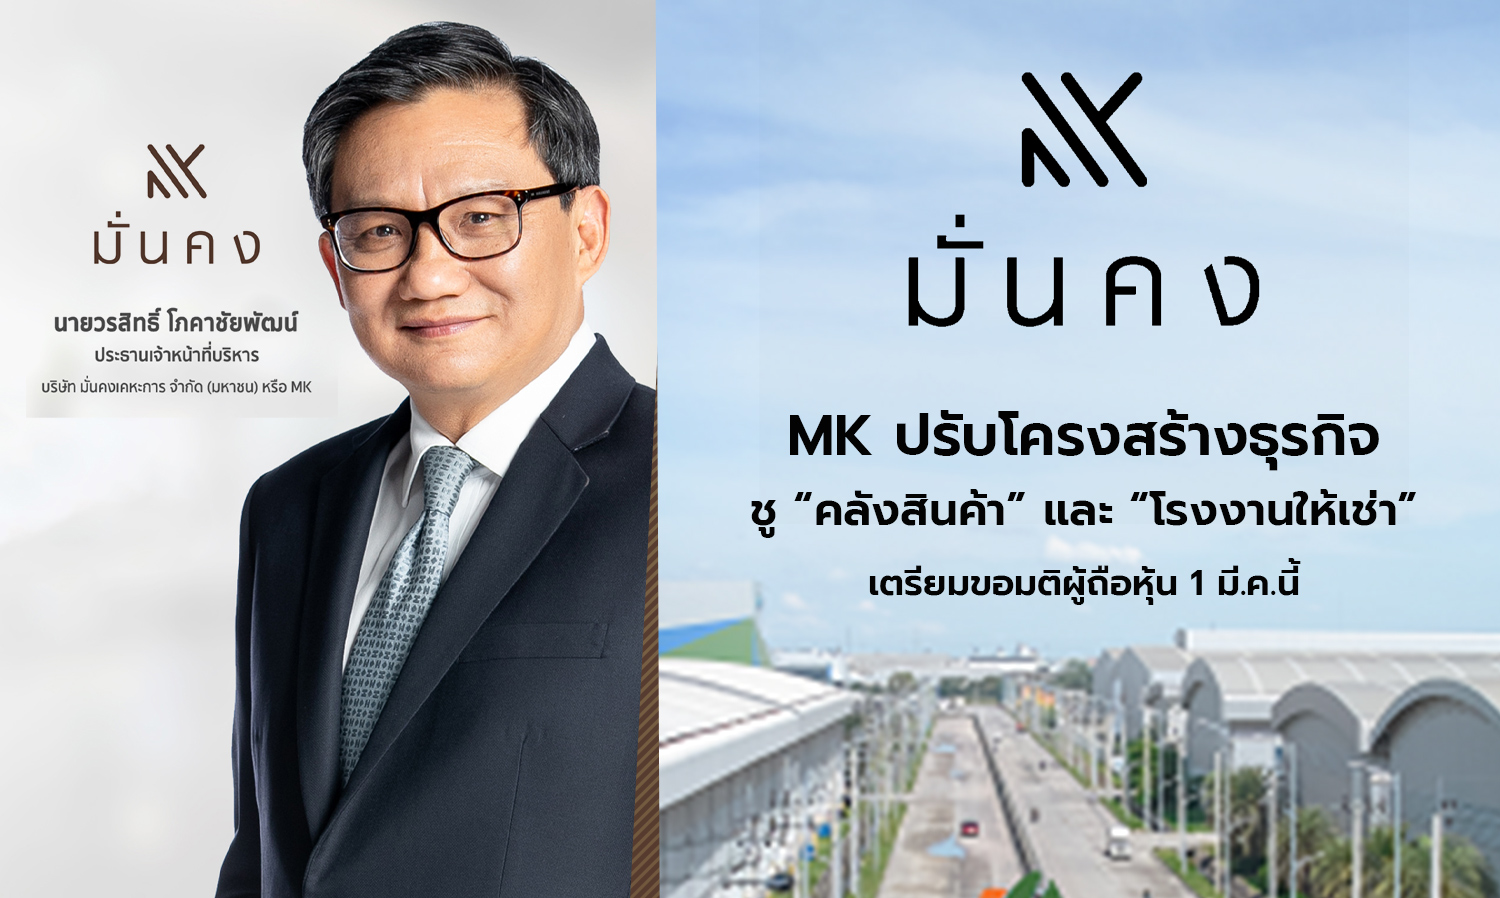 MK กางแผนปรับโครงสร้างธุรกิจ ชู “คลังสินค้า” และ “โรงงานให้เช่า” รับโอกาสภาคอุตฯขยายฐานสู่อาเซียน เตรียมขอมติผู้ถือหุ้น 1 มี.ค.นี้